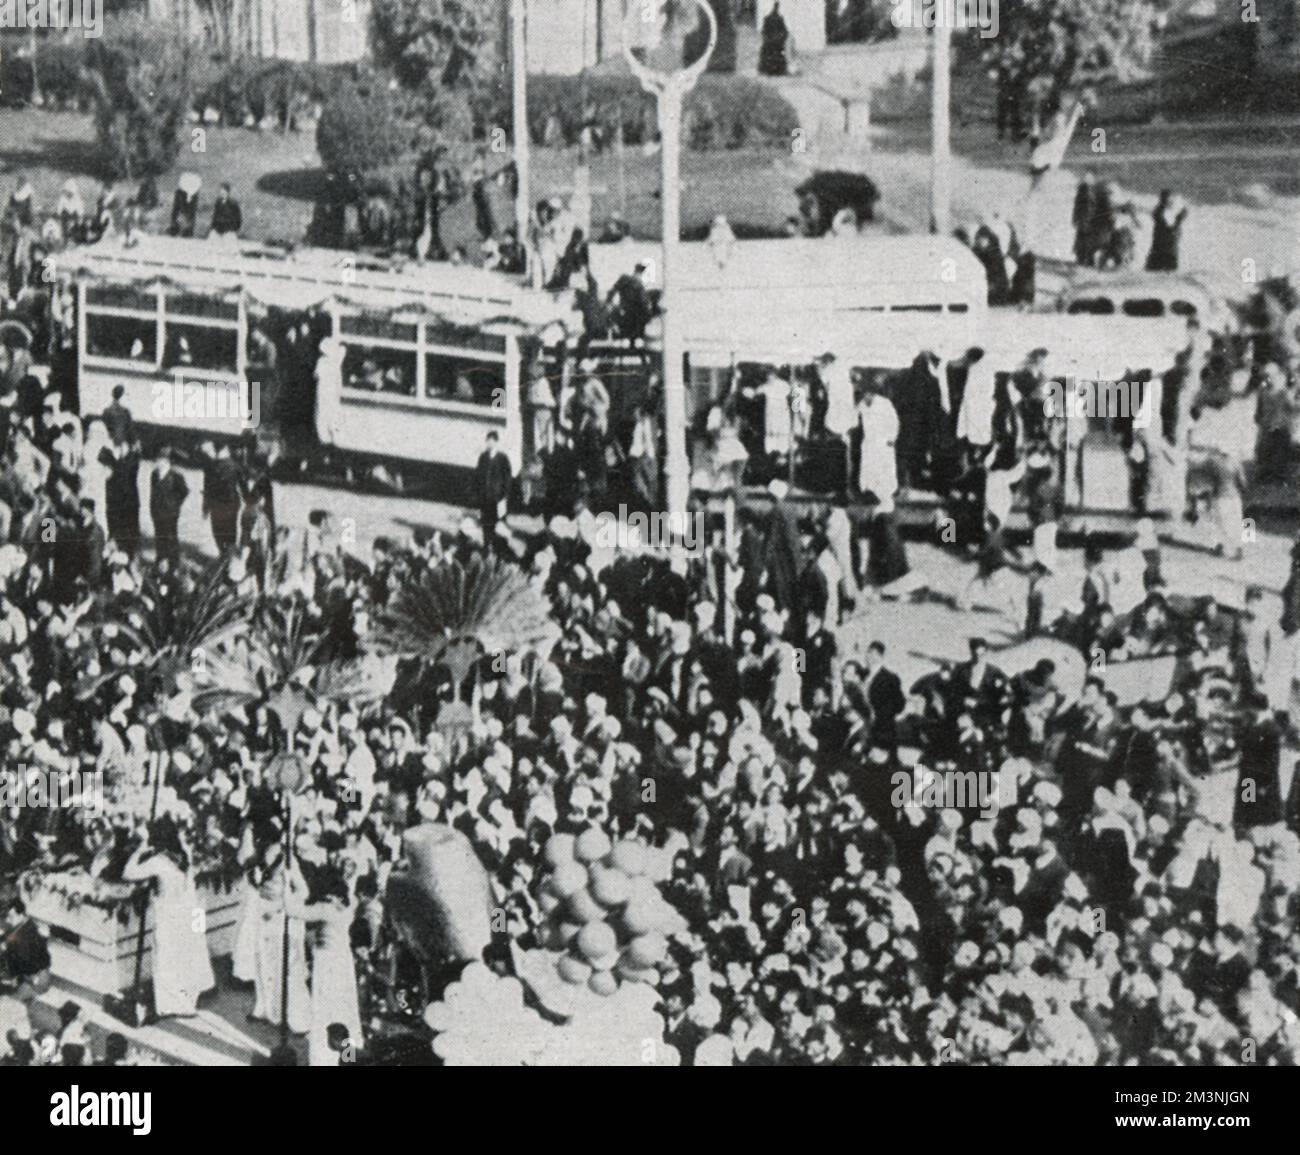 Animations publiques au Caire pour célébrer le mariage royal du roi Faruk à Farida. Des groupes militaires ont joué dans des parcs publics et des quartiers indigènes, et des acrobates de rue ont donné des spectacles gratuits à la foule. Date: 1938 Banque D'Images